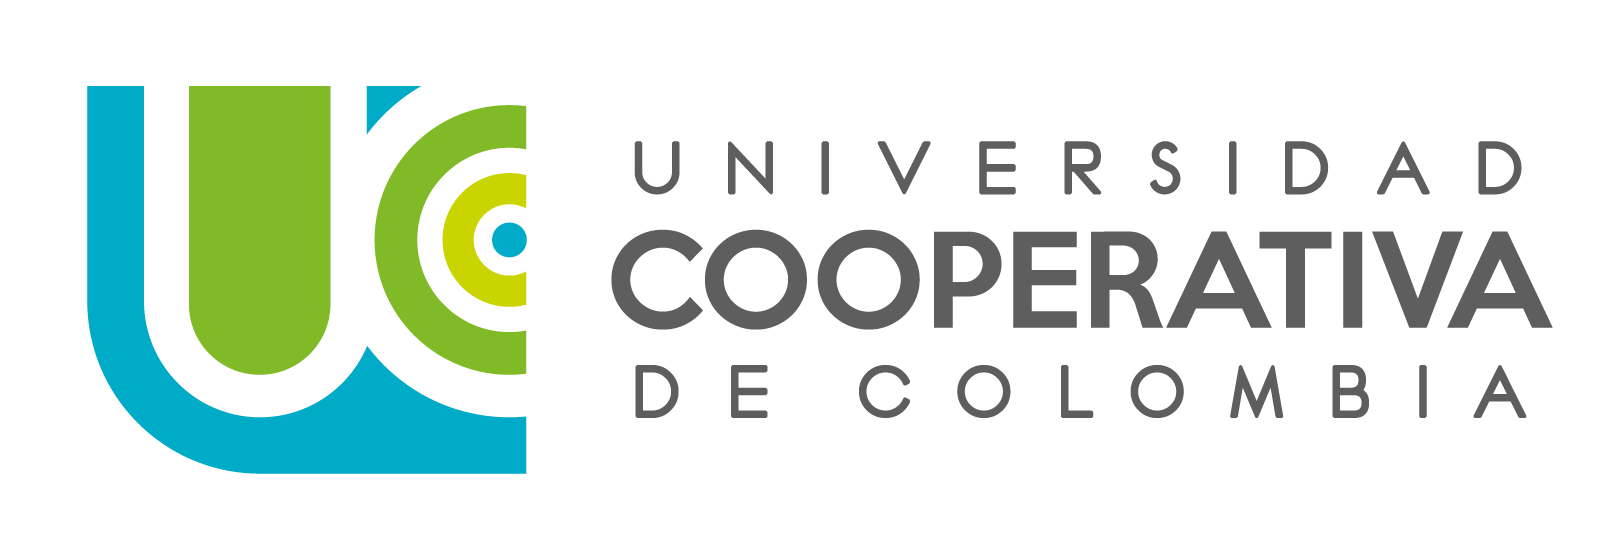 logo ucc 2018CURVAS 01